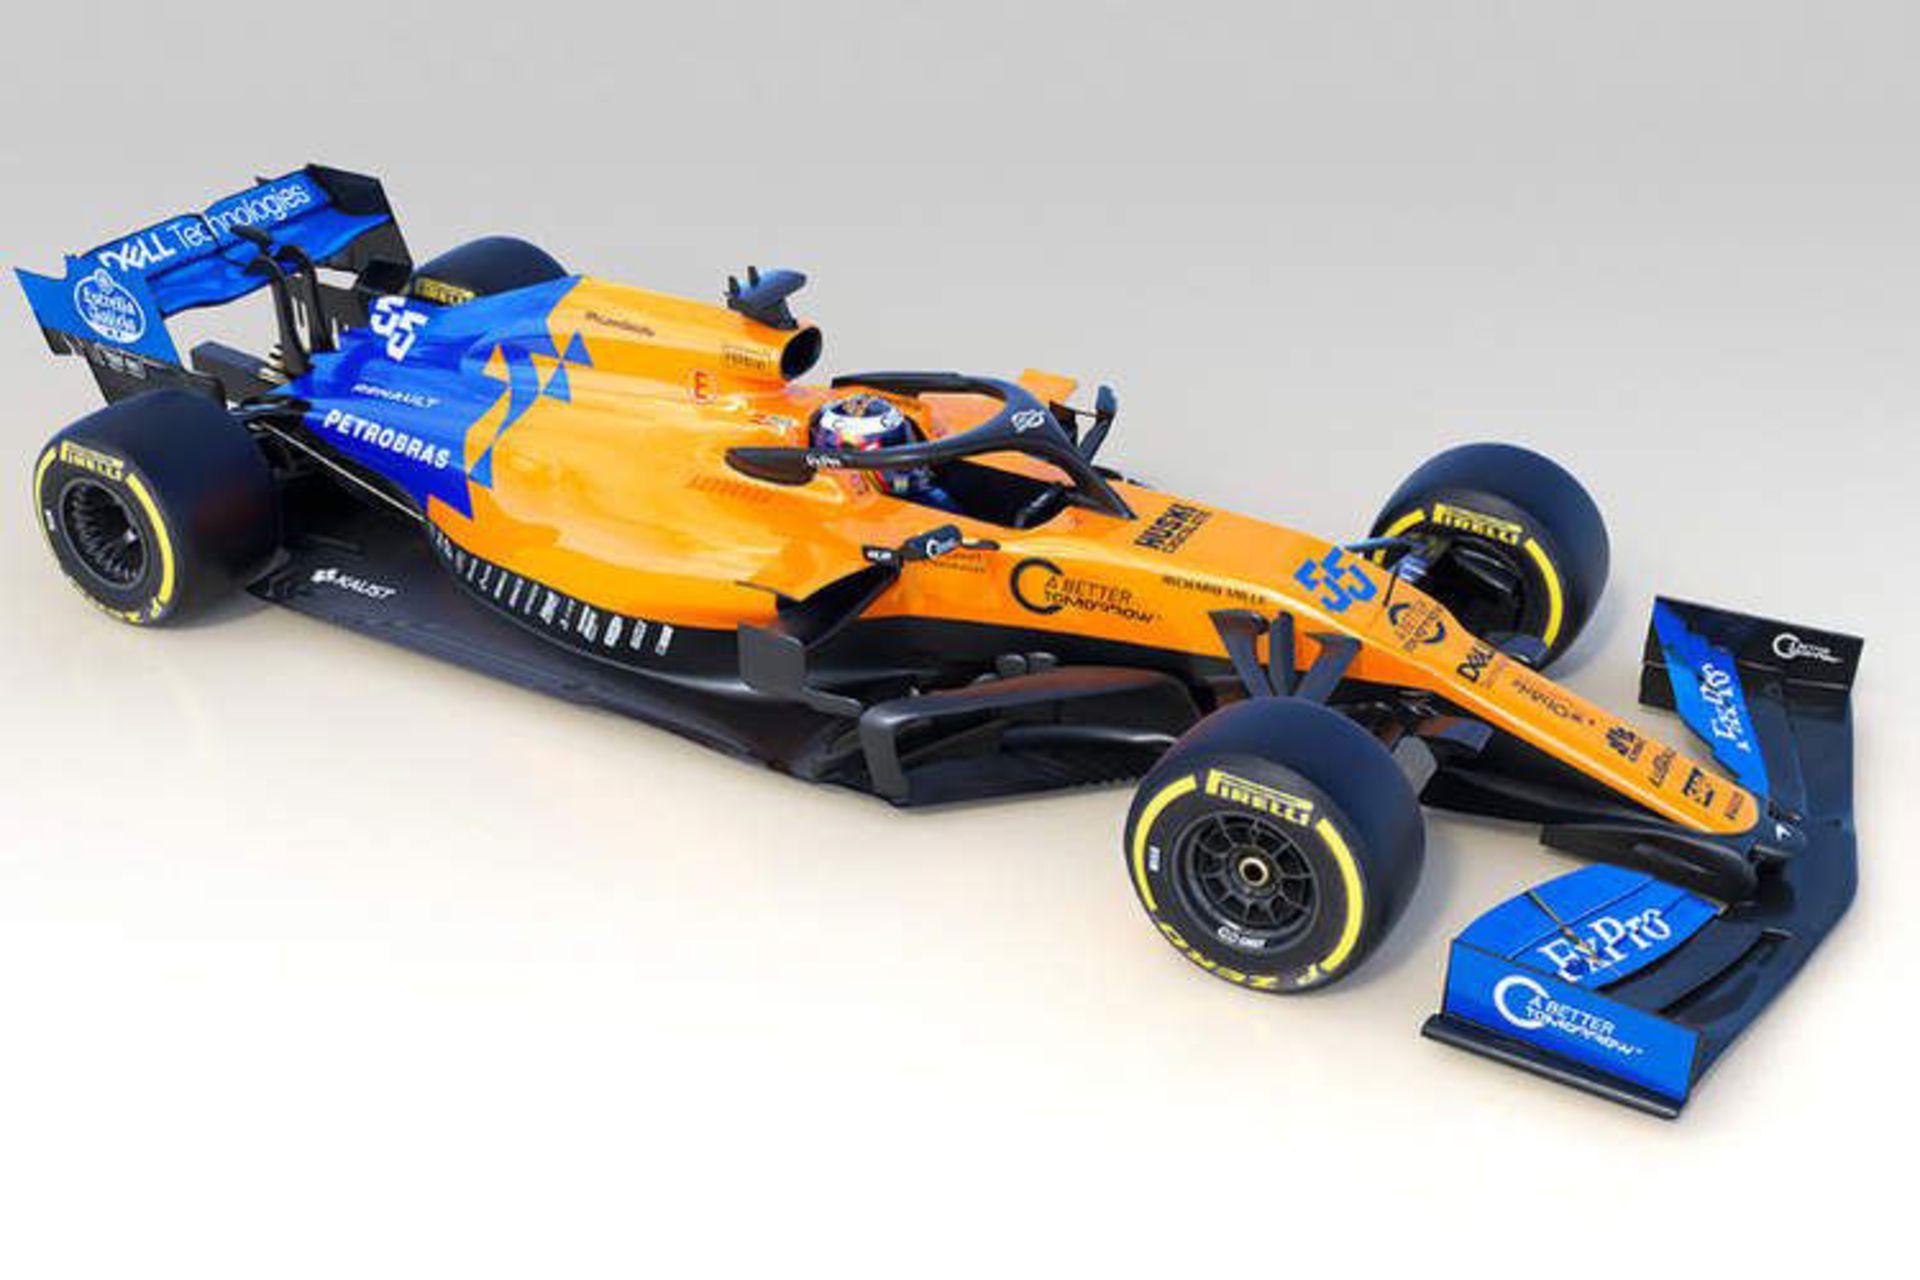 مرجع متخصصين ايران McLaren 2019 F1 car / خودرو فرمول يك مك لارن